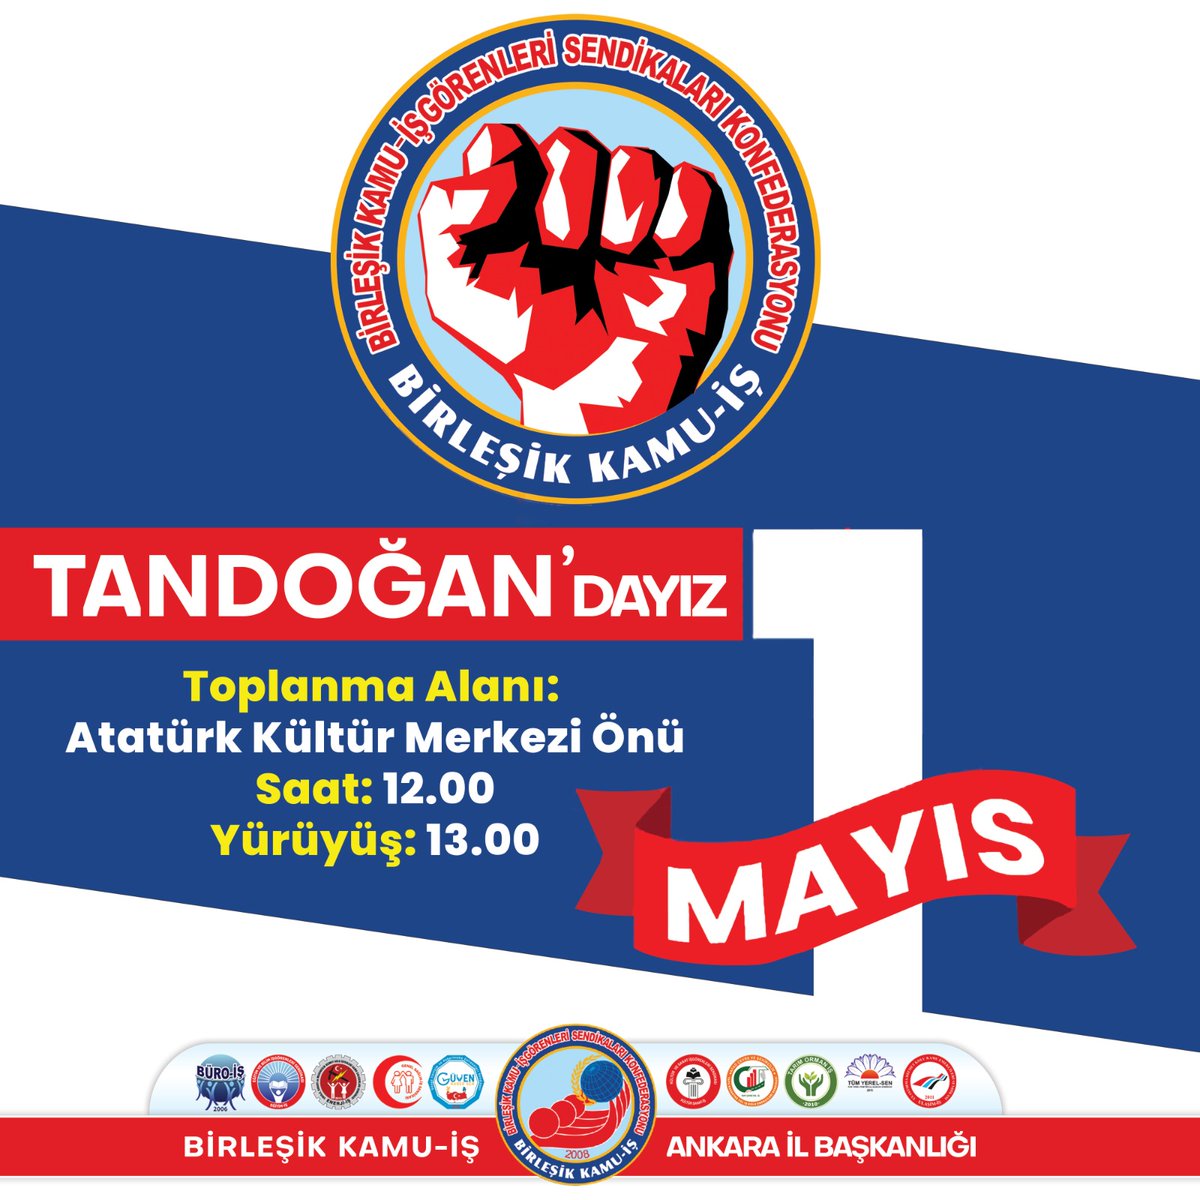 1 Mayıs’ta Ekmeğimizi büyütmek için, İnsanca yaşamak için, 1 Mayıs’ta emekçileri, Ankara Tandoğan'da buluşmaya çağırıyoruz. Ankaralılar 1 Mayıs’ta Tandoğan’da olacak #TANDOĞAN #Ankaralılar #Emekçiler